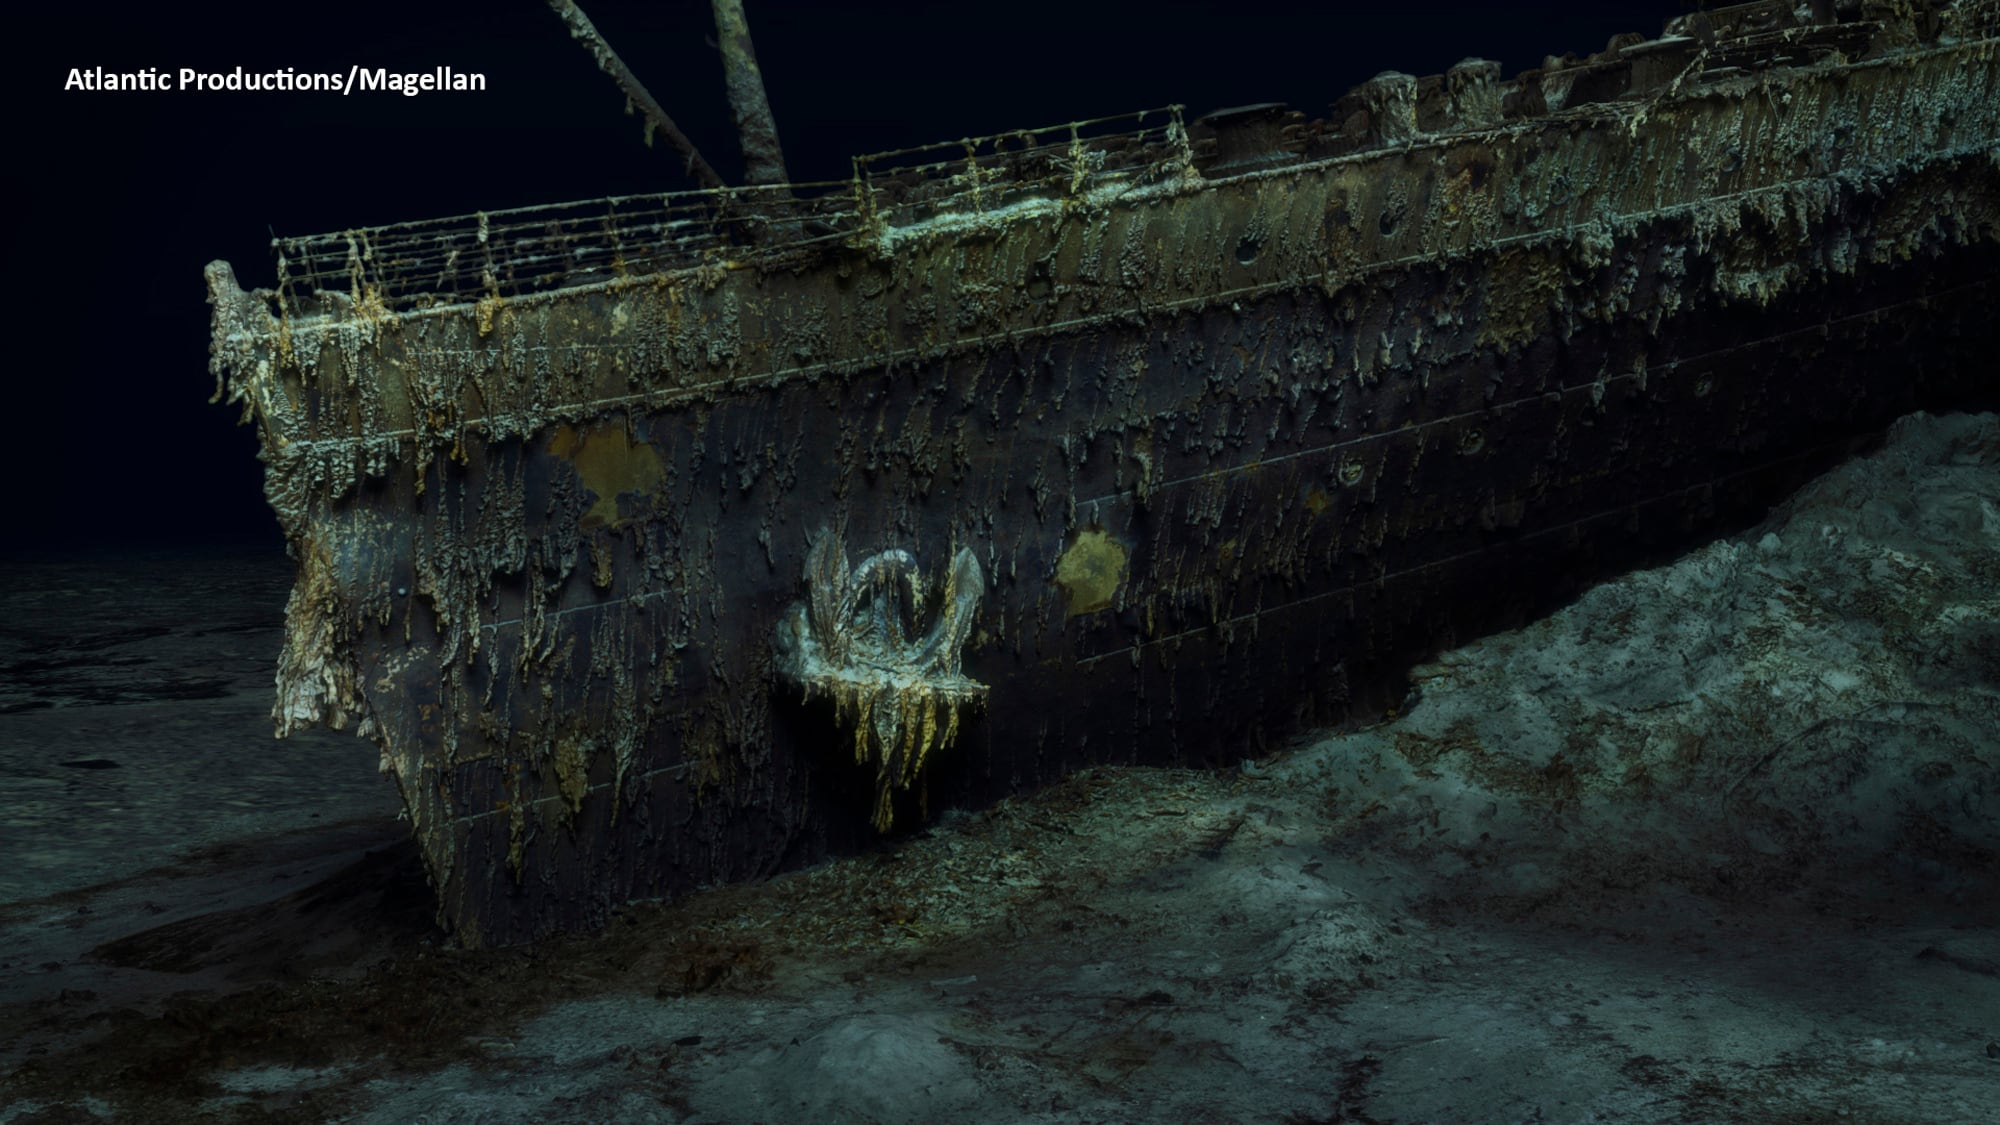 Investigadores de aguas profundas completaron el primer escaneo digital de tamaño completo del naufragio del Titanic, mostrando toda la reliquia con detalles y claridad sin precedentes